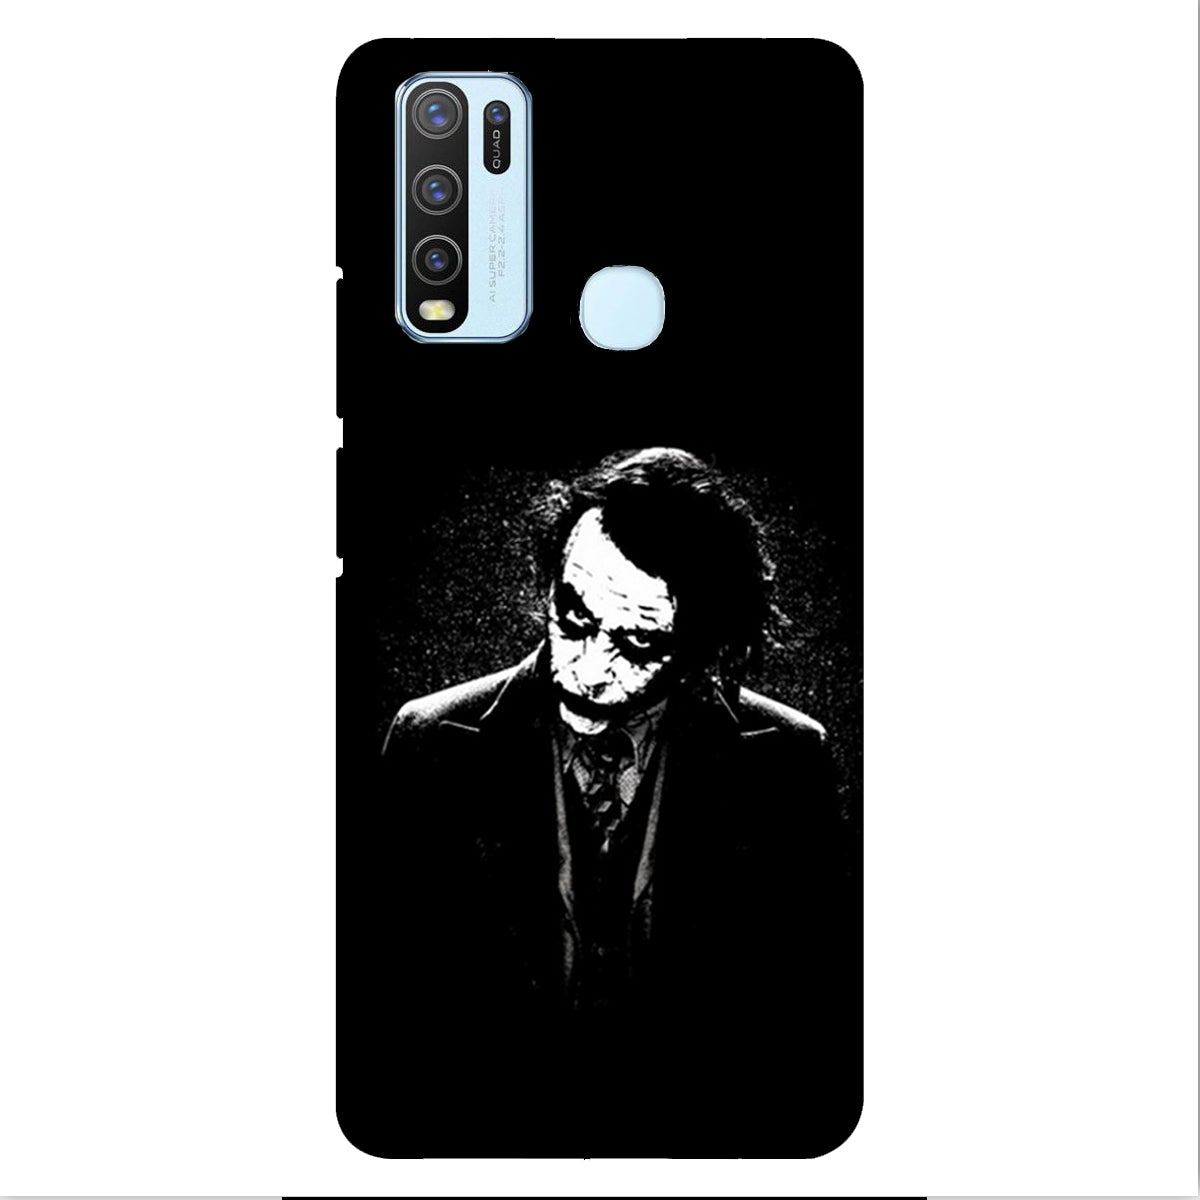 The Joker - Black & White - Mobile Phone Cover - Hard Case - Vivo